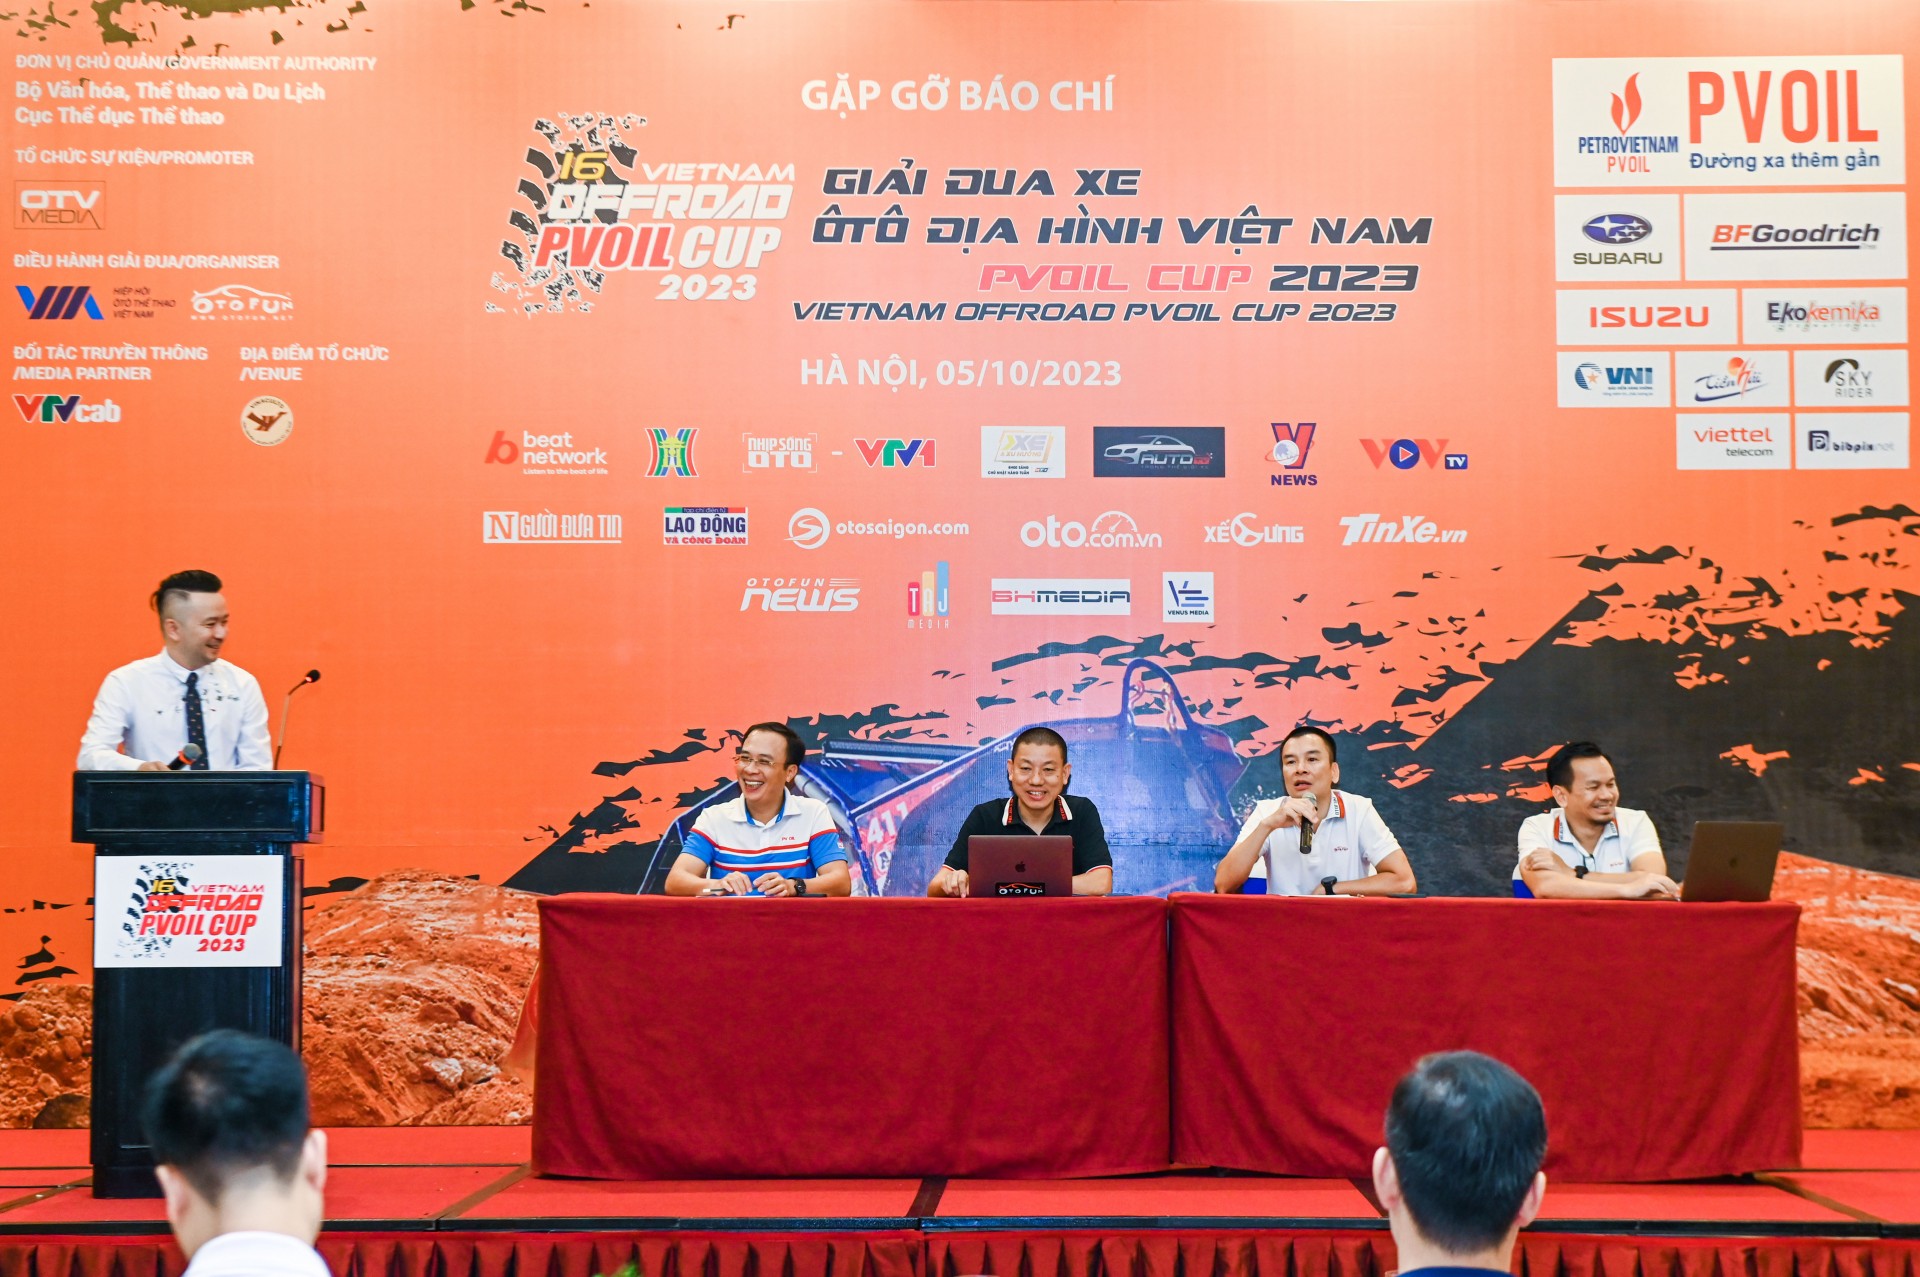 [PVOIL VOC 2023] Giải đua ô tô địa hình Việt Nam PVOIL Cup 2023 sẽ diễn ra vào ngày 27-29/10